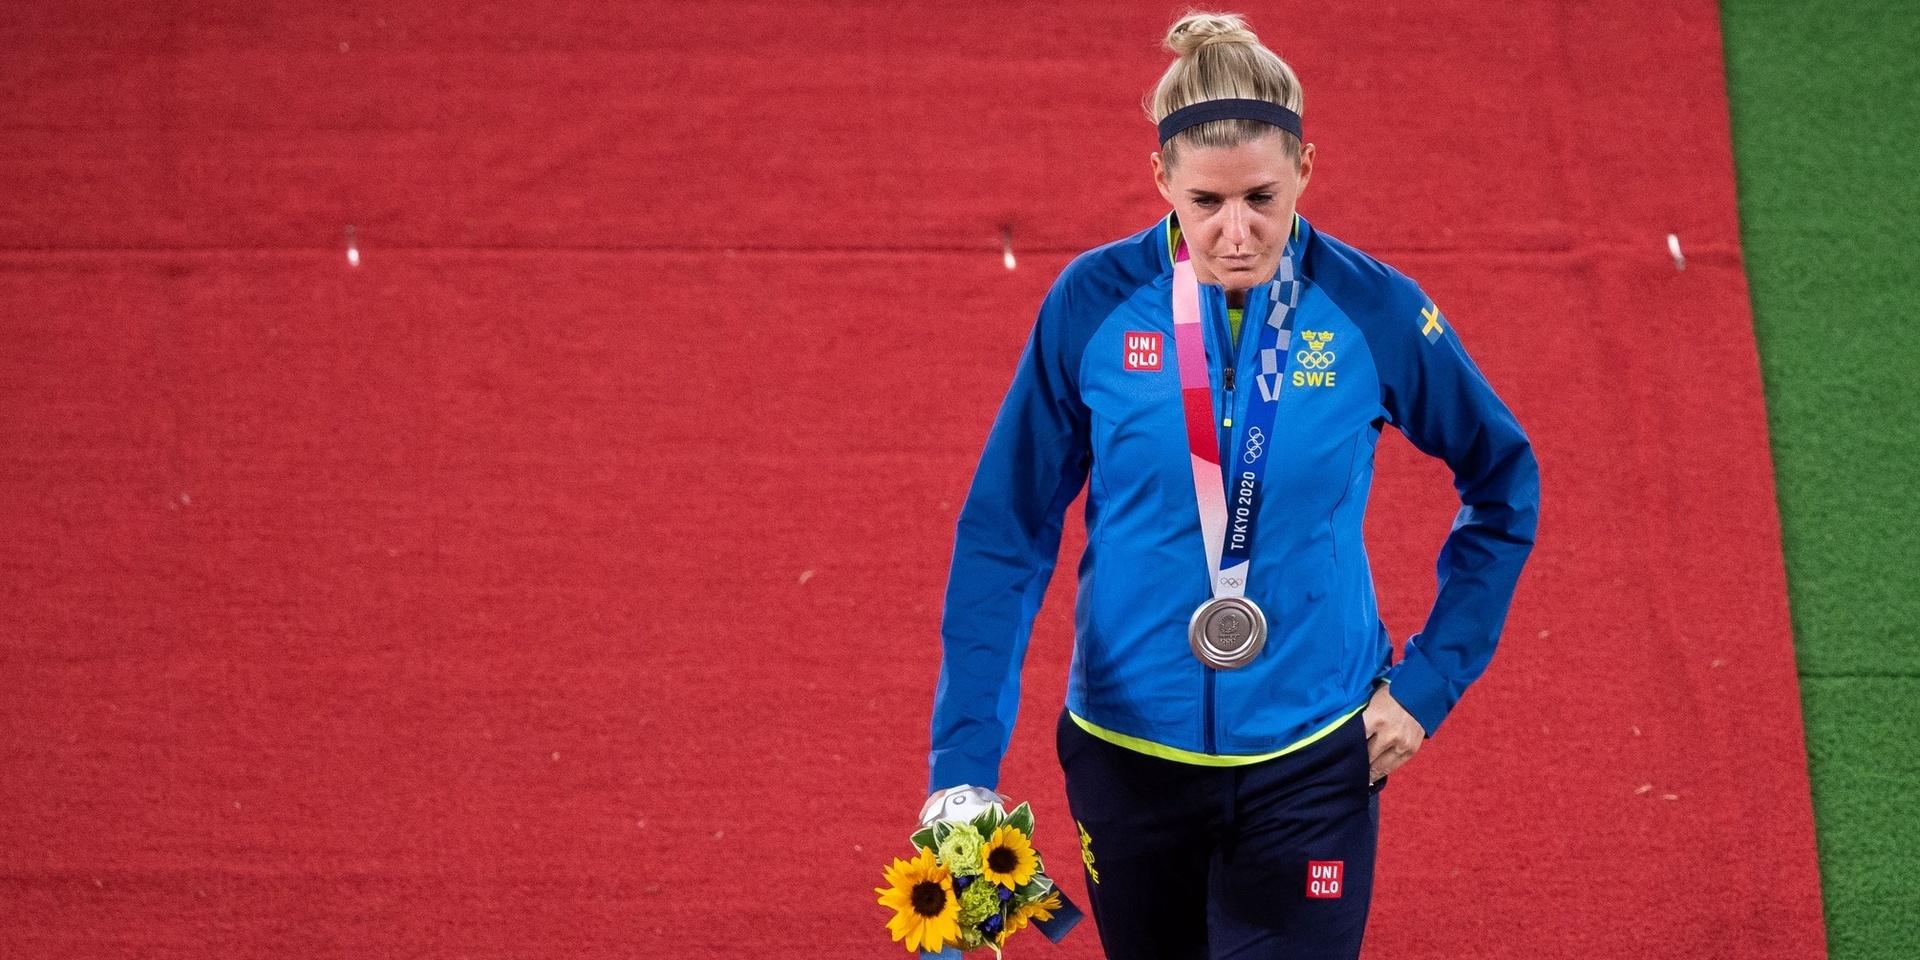 Olivia Schough tog emot silvermedaljen efter straffdramat mot Kanada i OS-finalen.